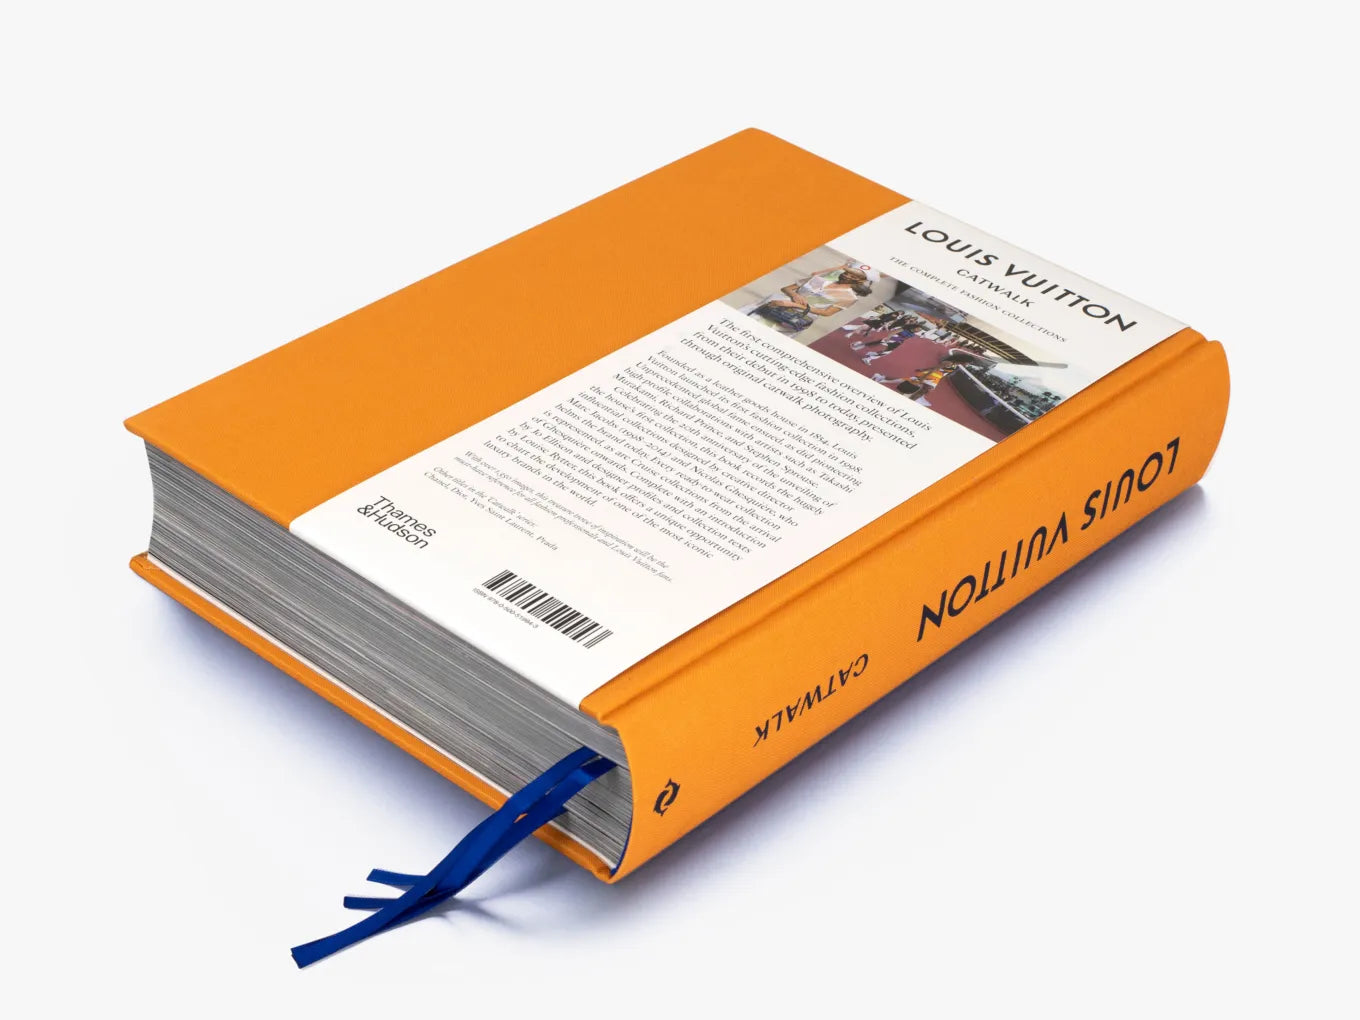 Louis Vuitton Catwalk Book – Peony Lane